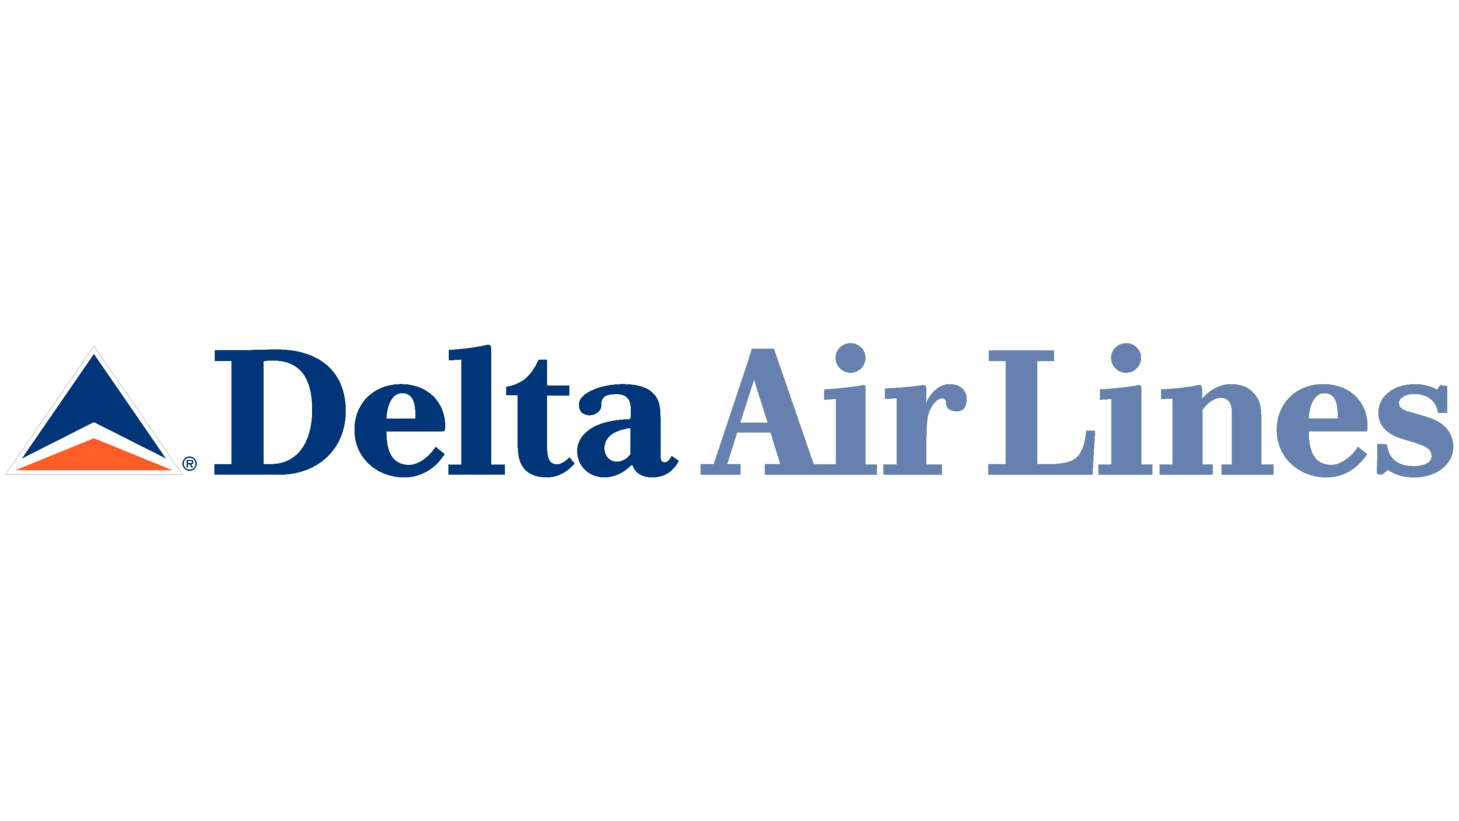 Delta air lines second era sign 1995 2000